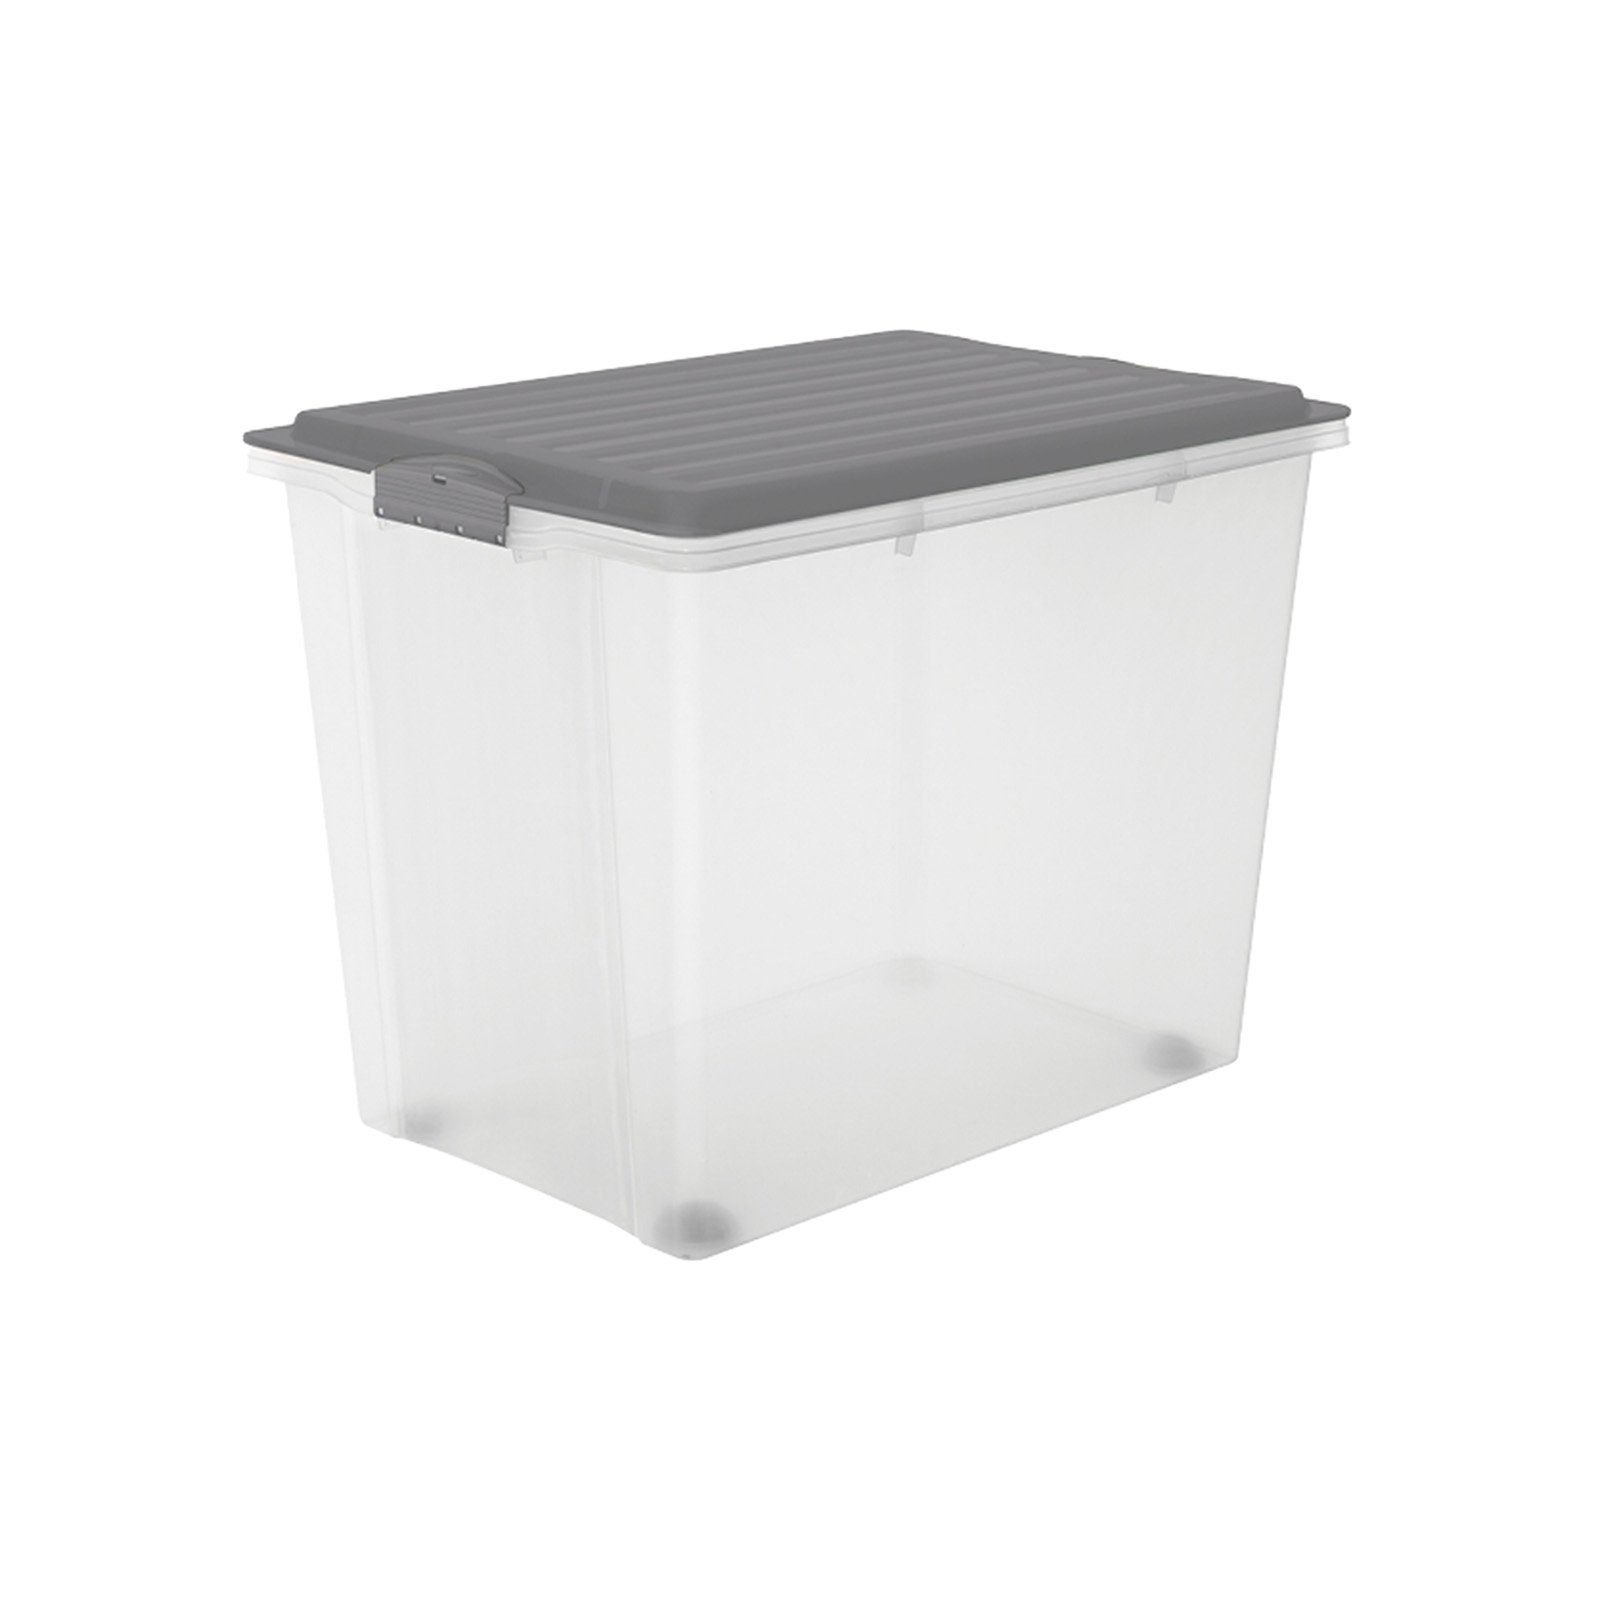 ROTHO Aufbewahrungsbox Compact Aufbewahrungsbox 70l mit Deckel, Kunststoff (PP) BPA-frei